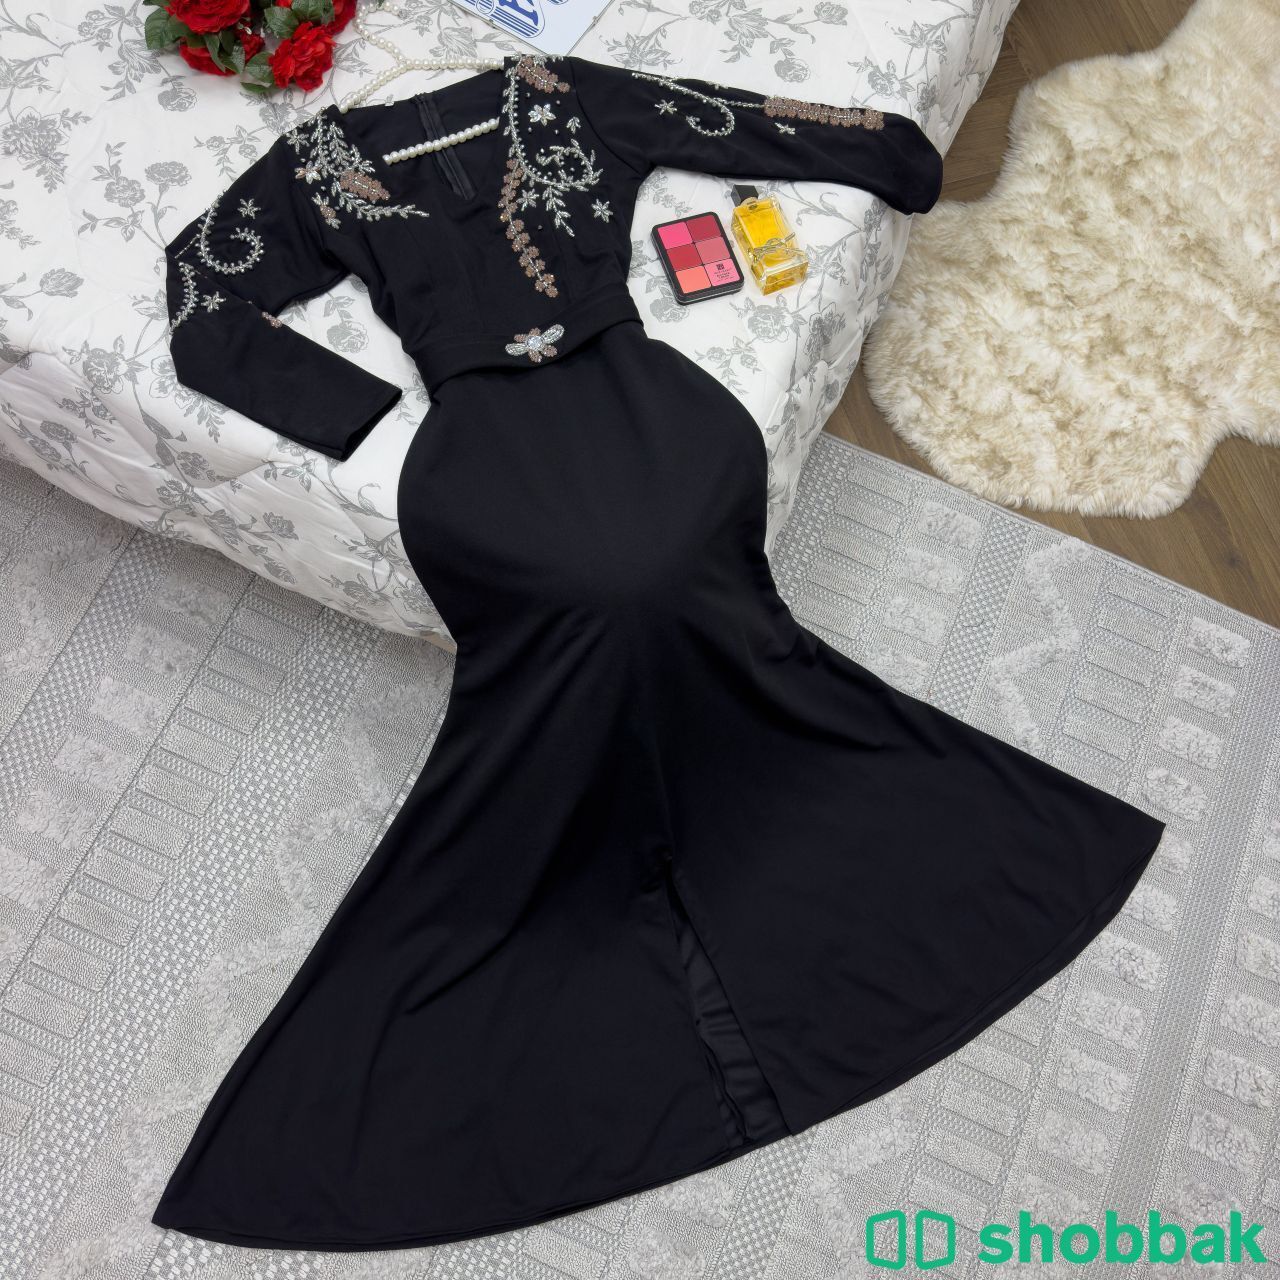 فستان سهره وملكه انيقه مميزه Shobbak Saudi Arabia